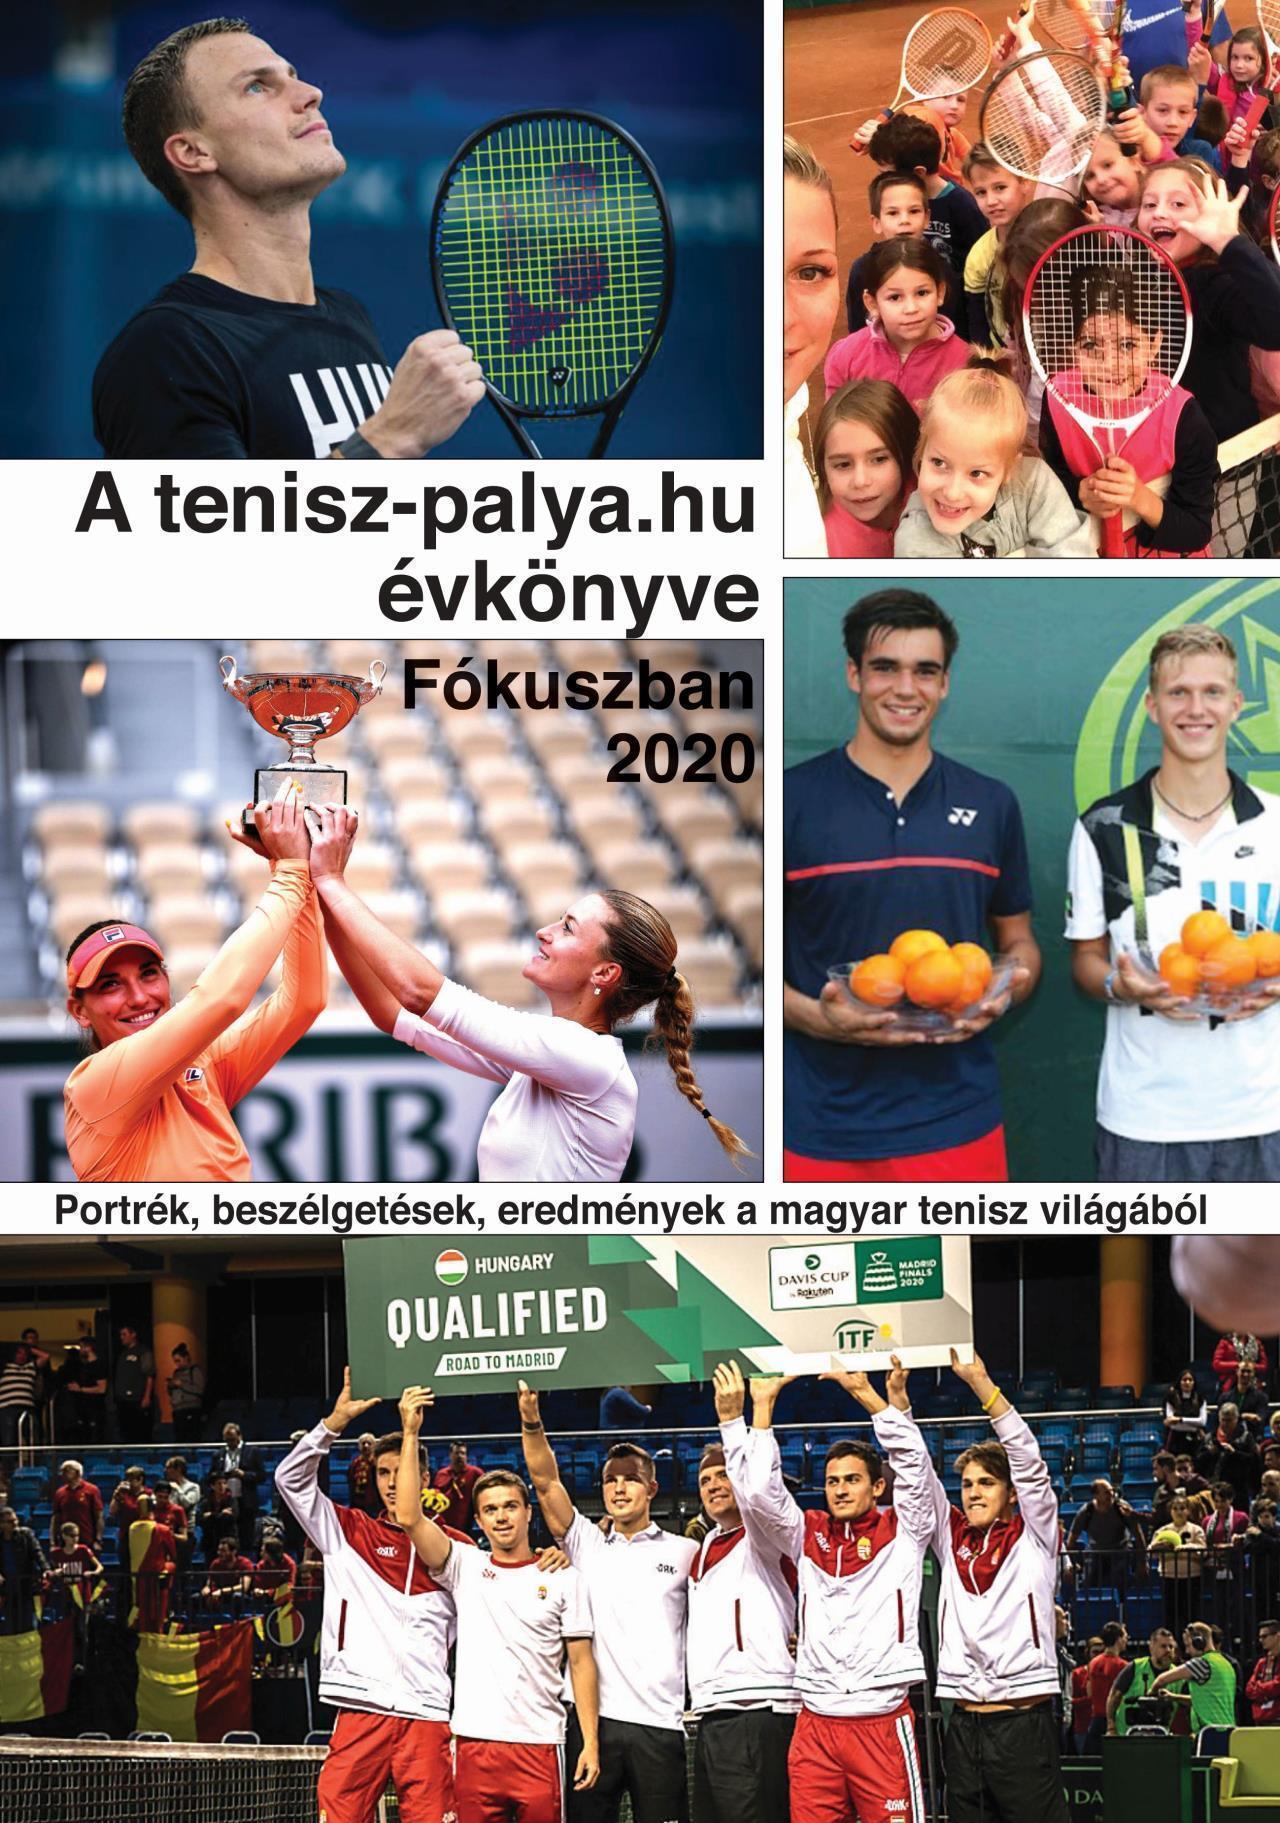 A tenisz-palya.hu